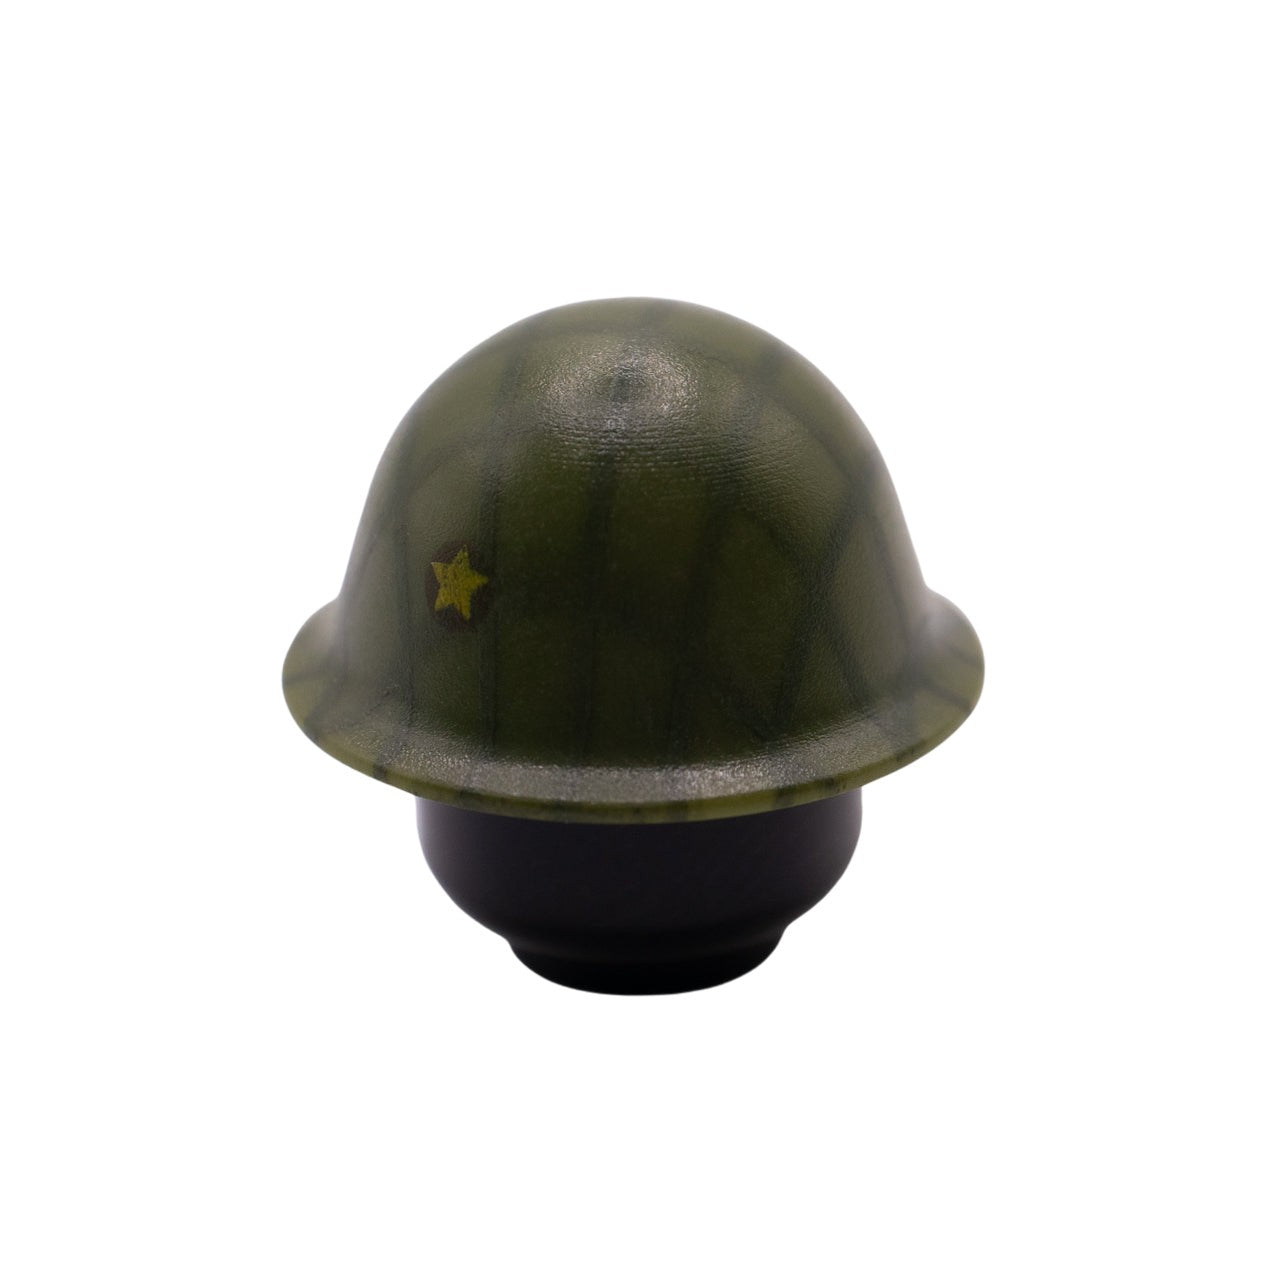 Type 90 Helmet - Printed